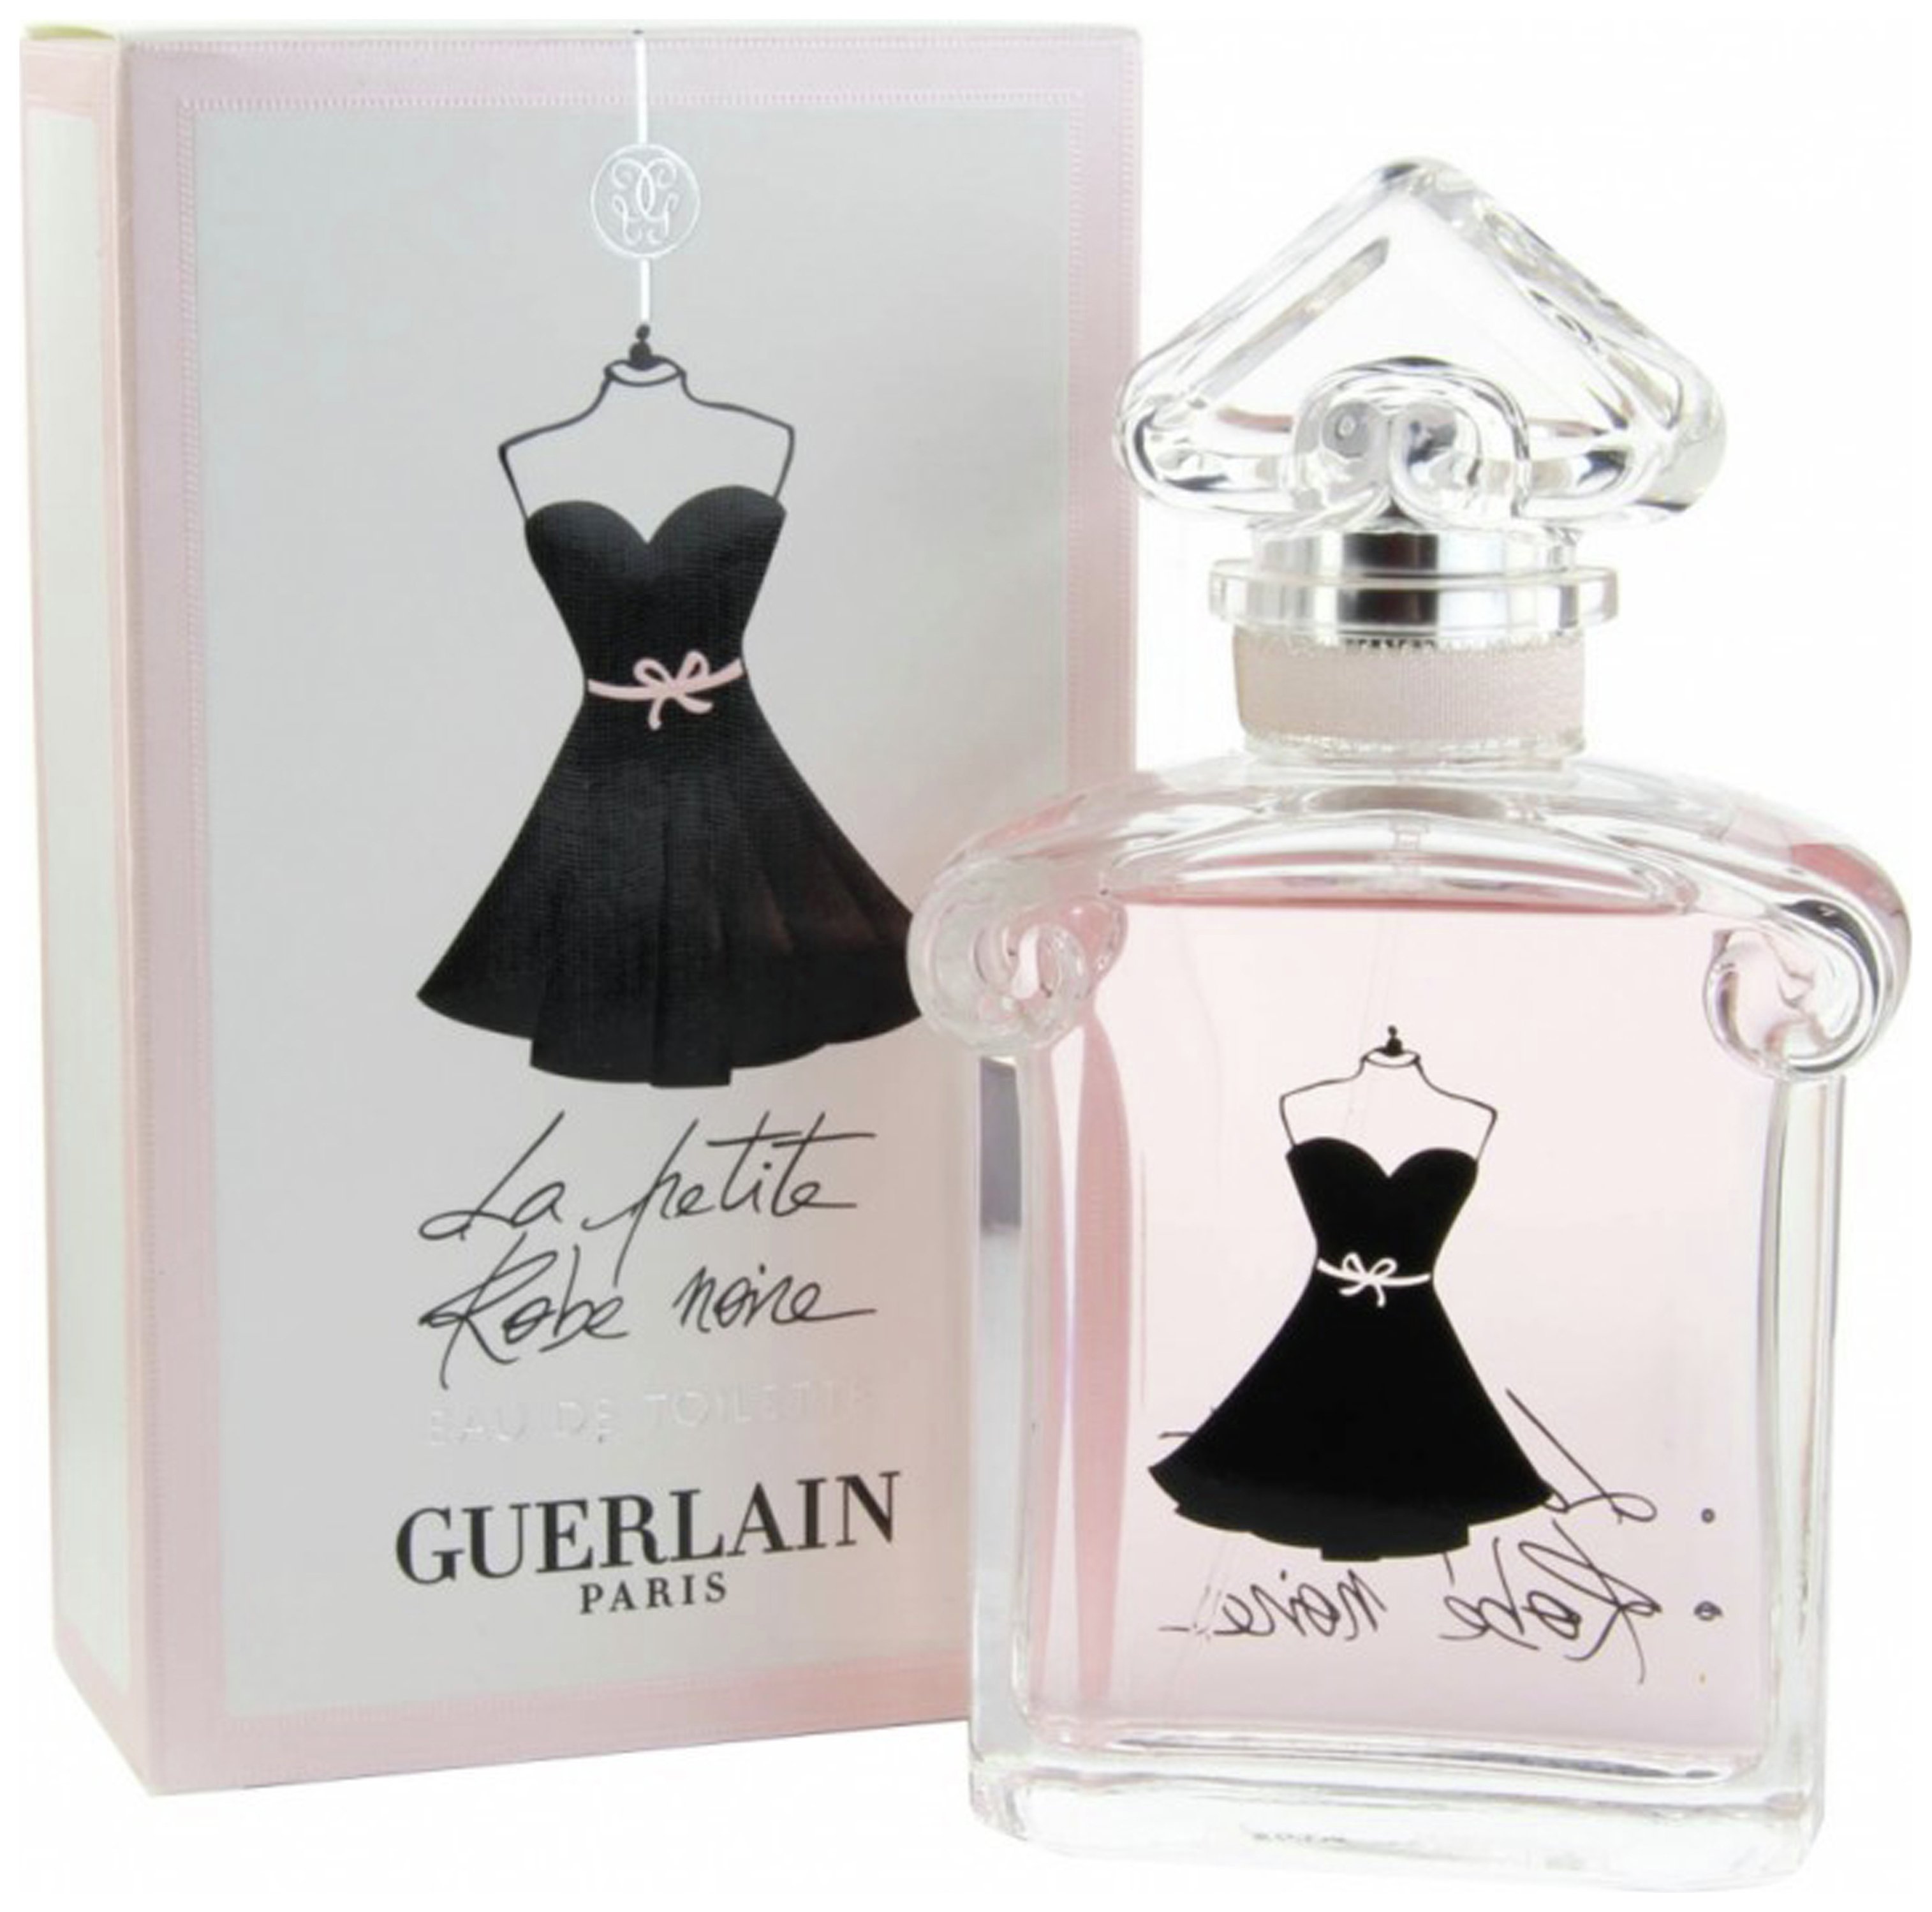 Guerlain La Petite Robe Noire for Women Eau de Toilette 30ml